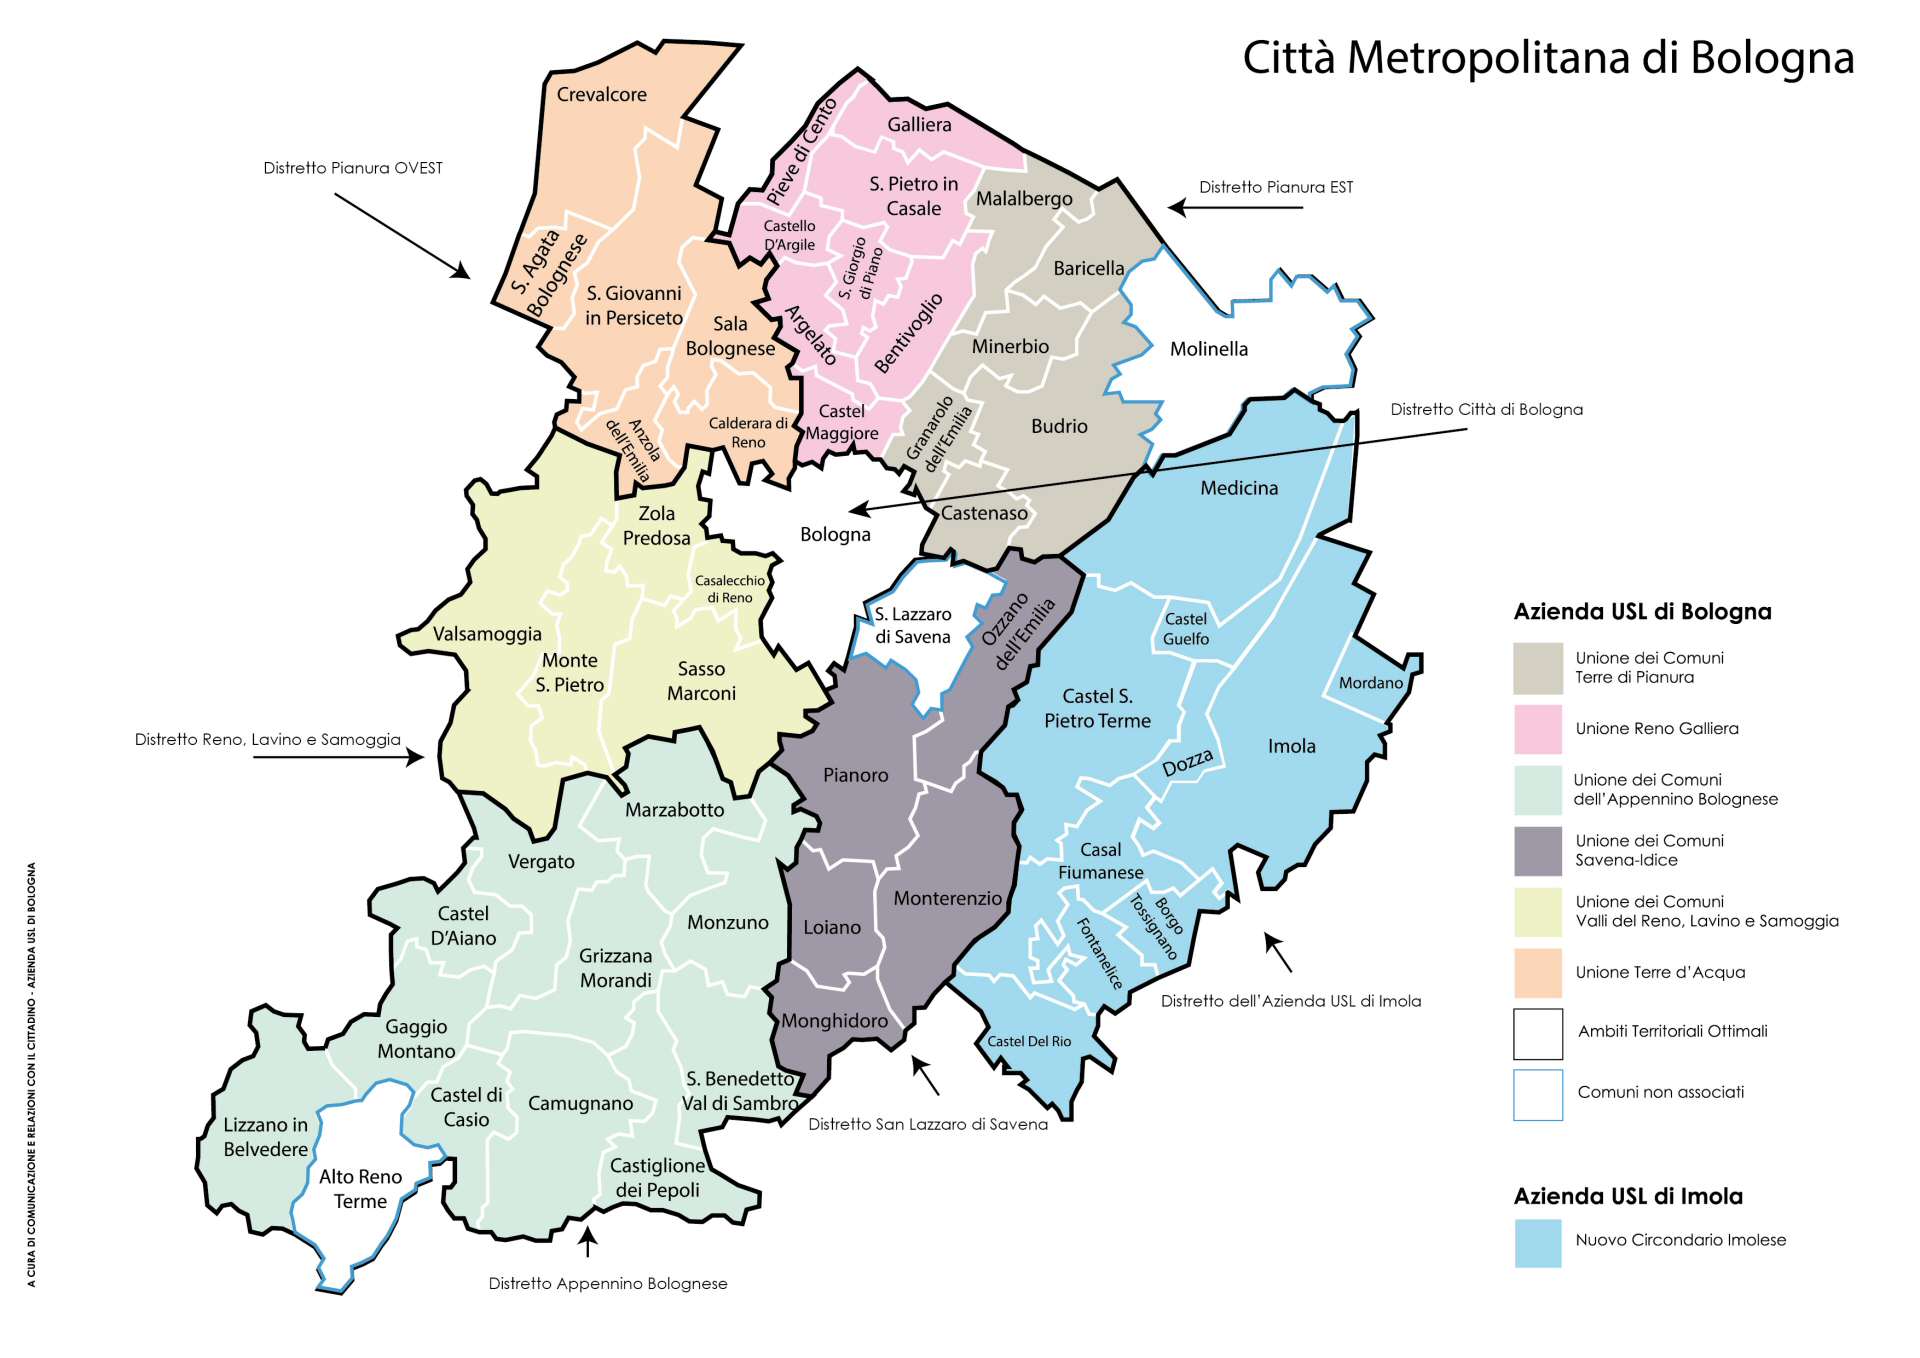 Mappa della governance della Città metropolitana di Bologna 